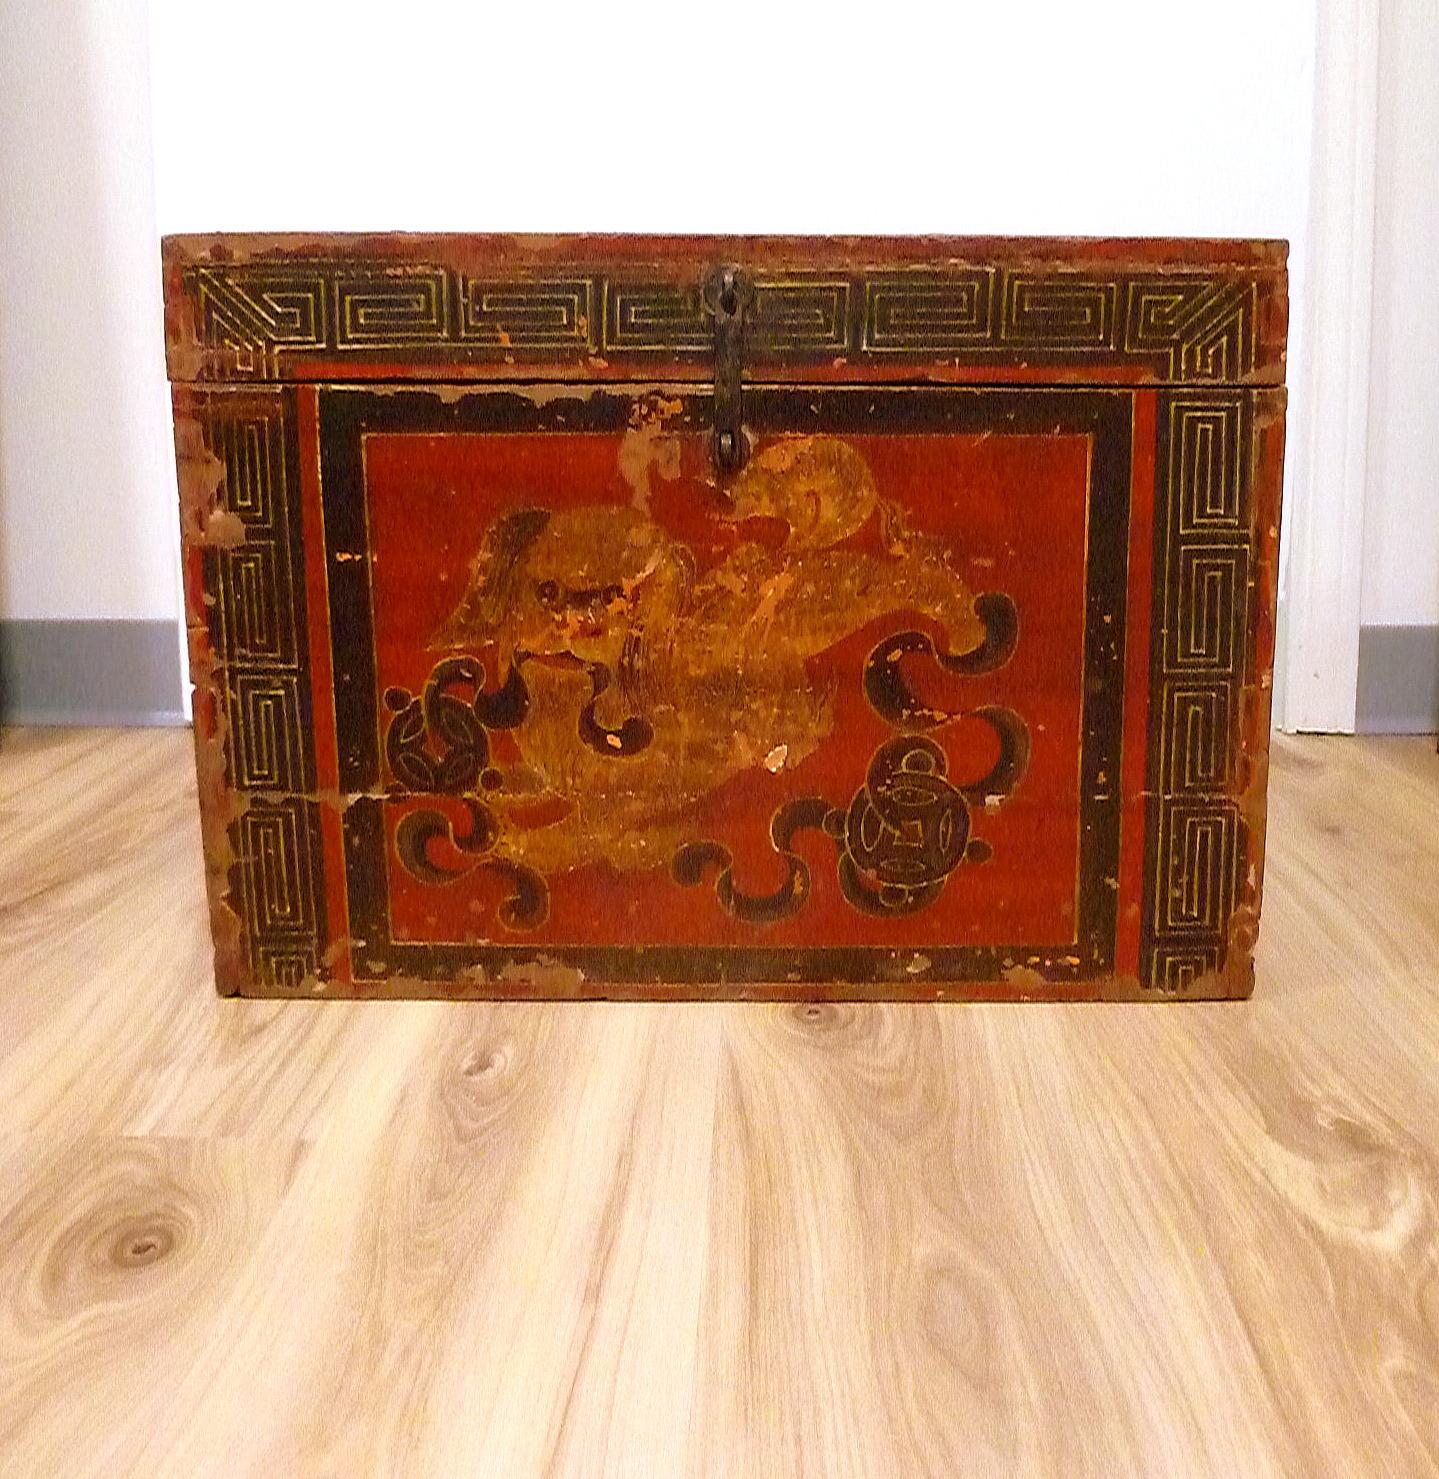 Boîte tibétaine de grande taille avec un lion foo peint jouant et poursuivant une balle.
Motif original peint